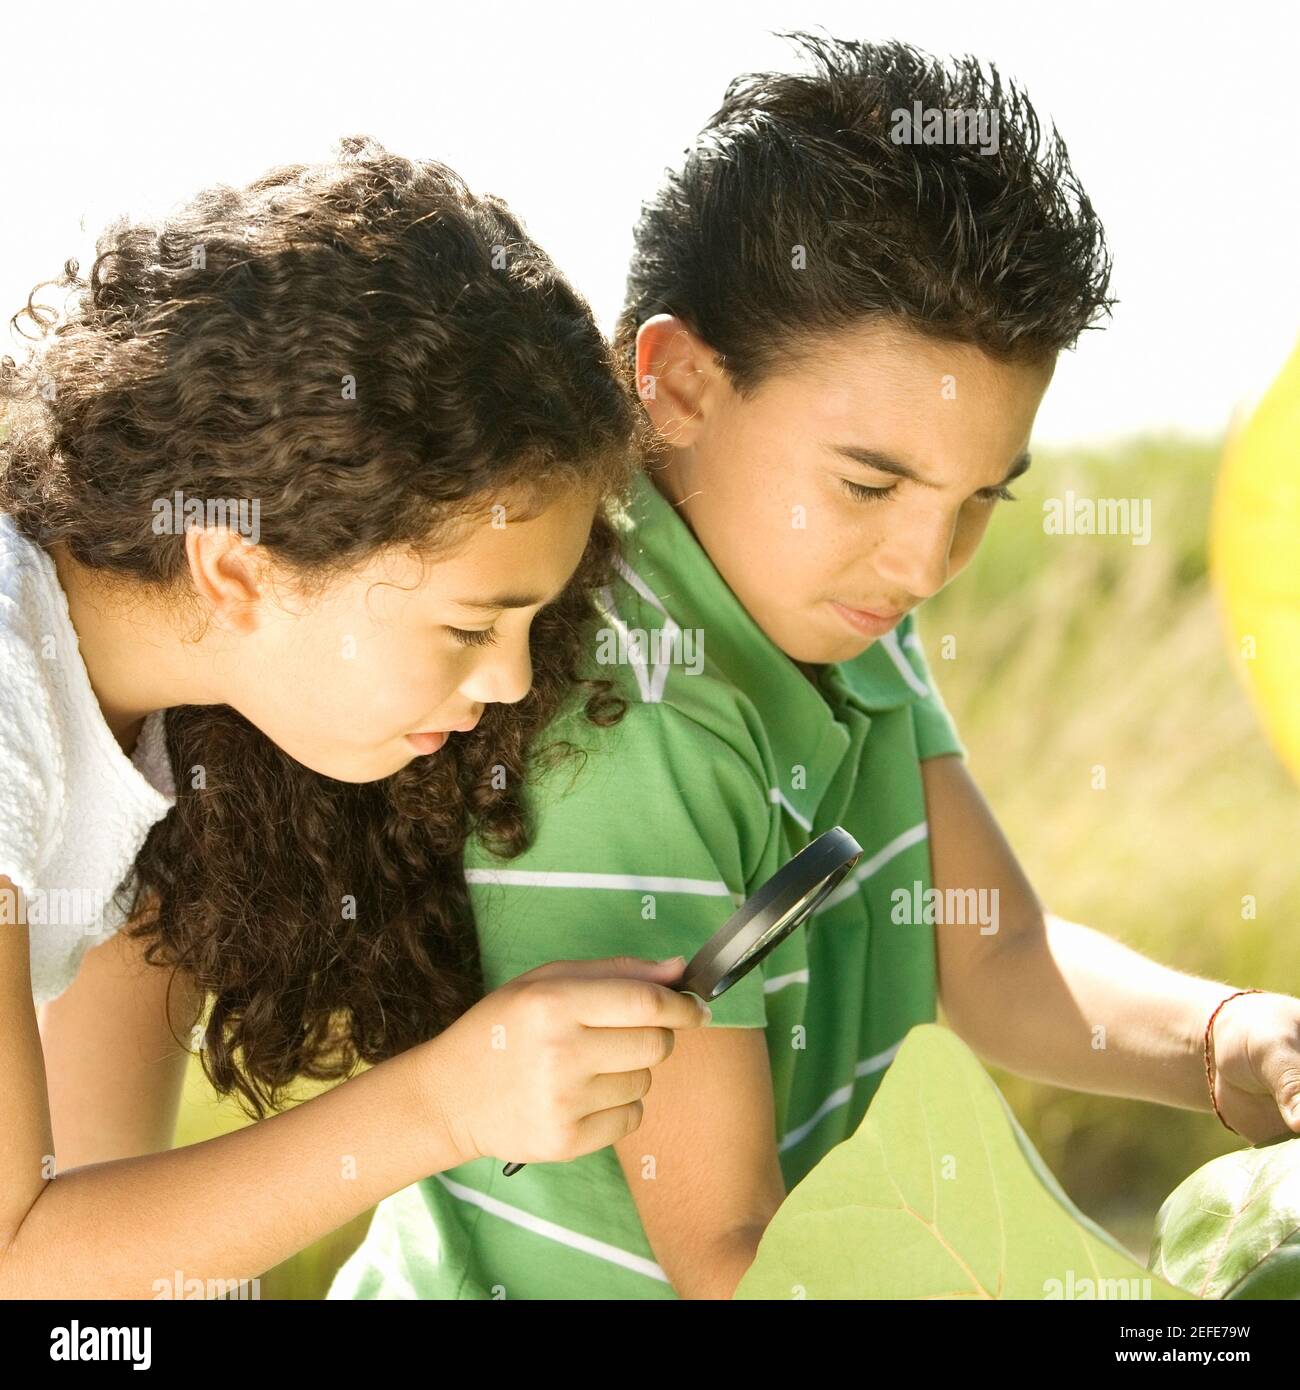 Gros plan d'un garçon et d'une fille regardant à travers un loupe Banque D'Images